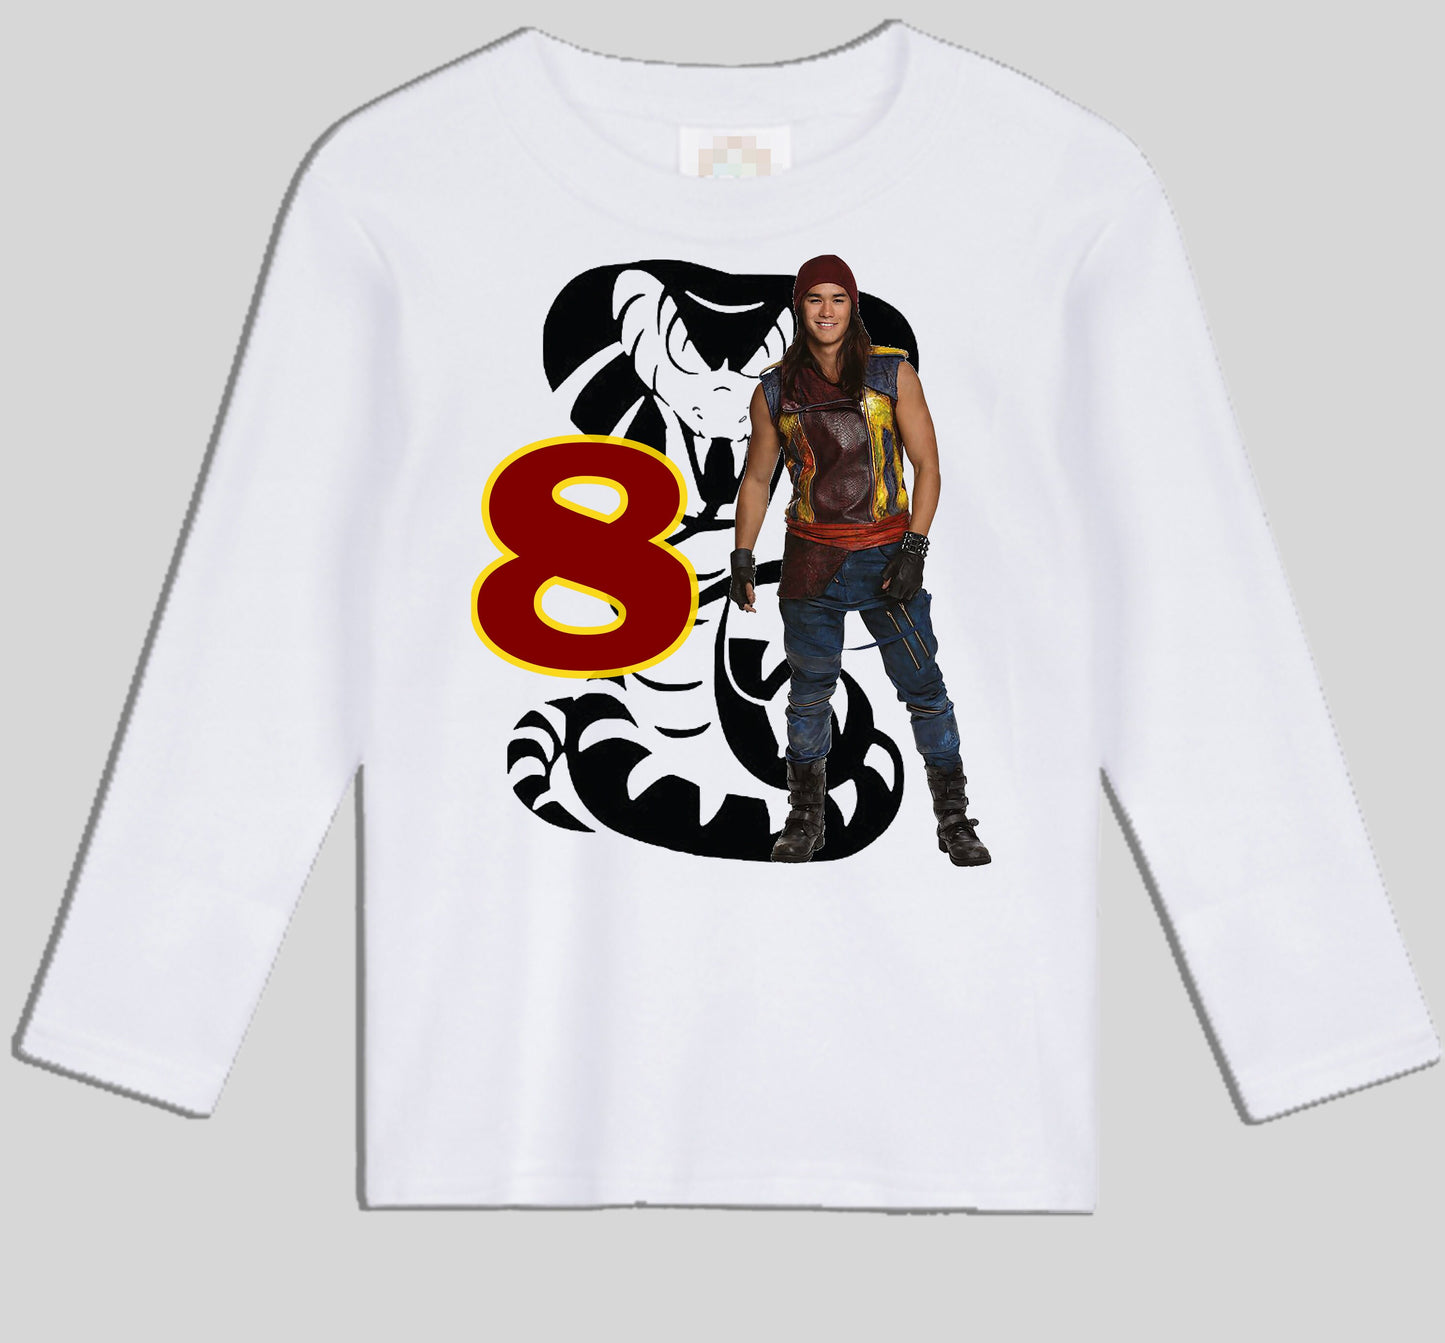 Jay Descendants Inspired birthday shirt |  Personalized shirts  | Birthday Jay Unisex shirts